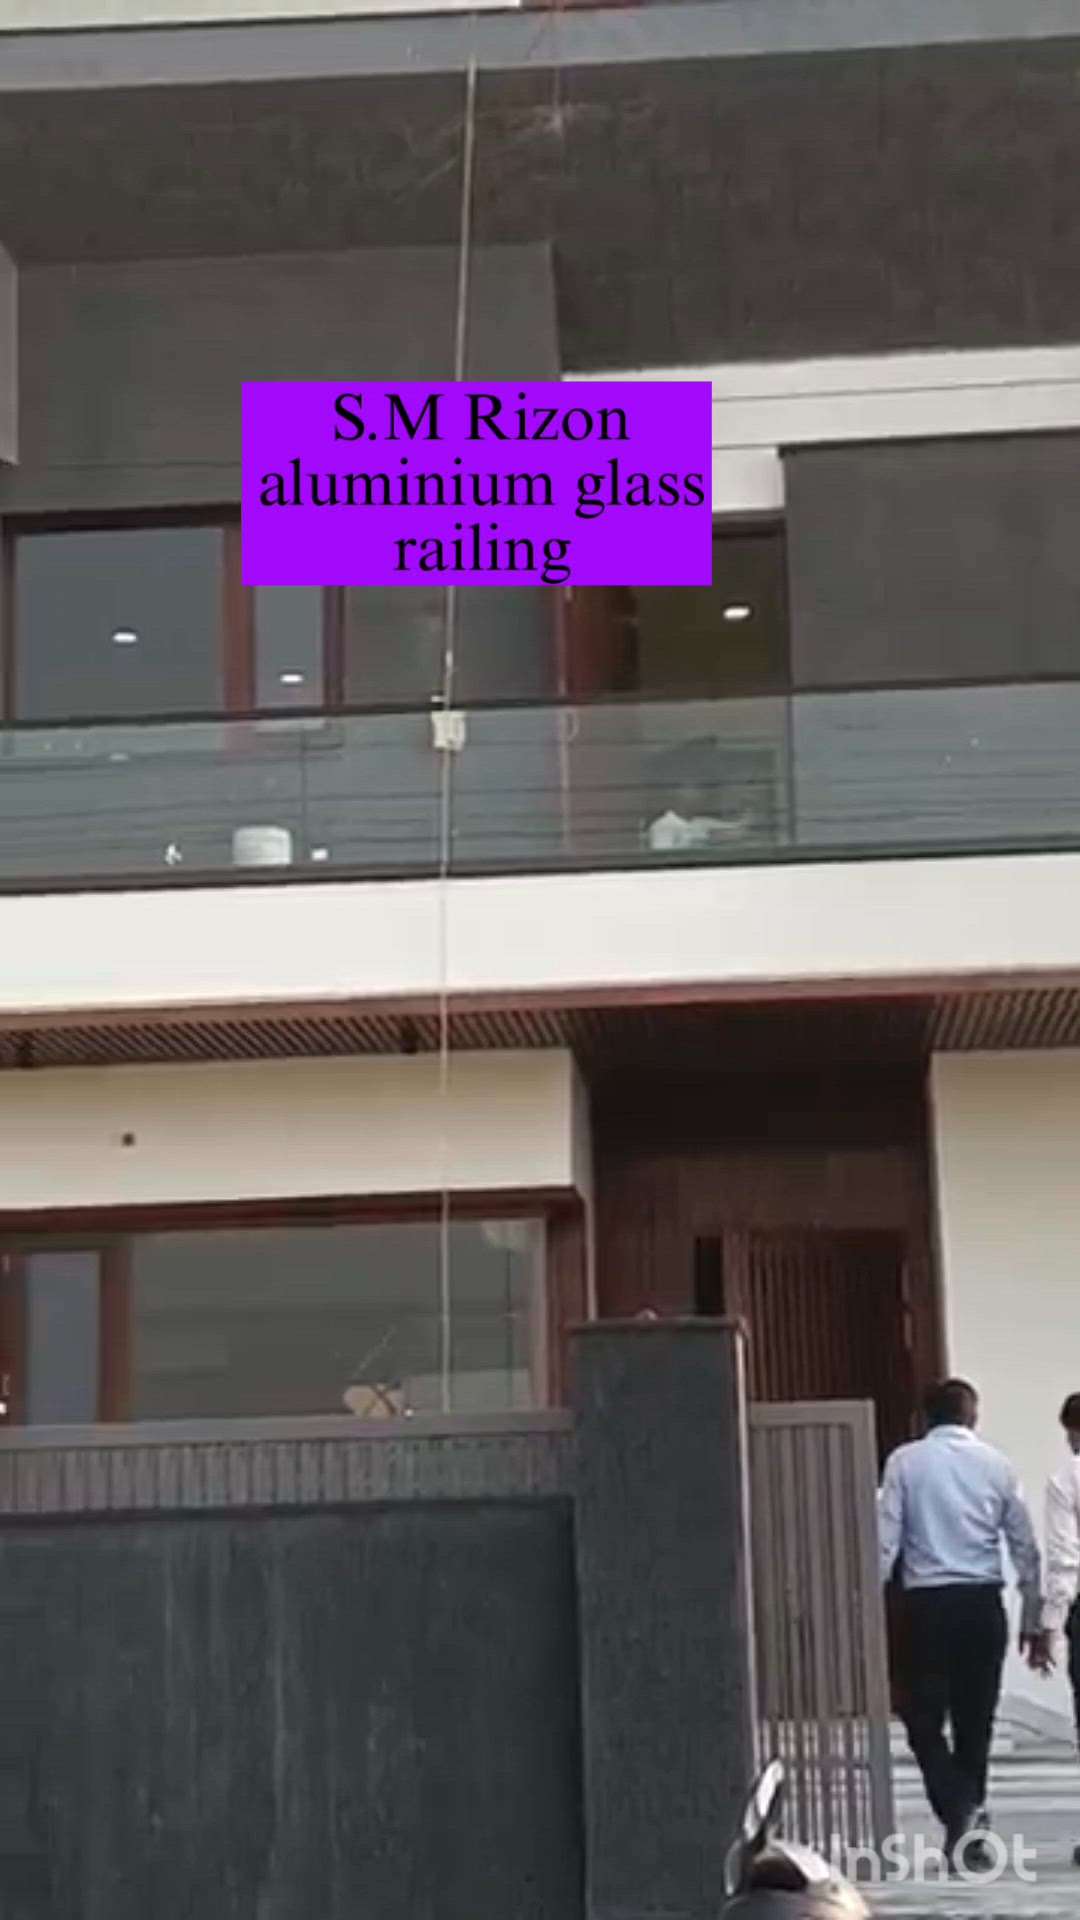 aluminium Profile/
aluminium glass railing window door. Sabhi kam uplabdh hai
9716408162

#reels #attitudestatus #reelsinstagram #reelsindia
#reelsusa #usa #explore #exploremore #